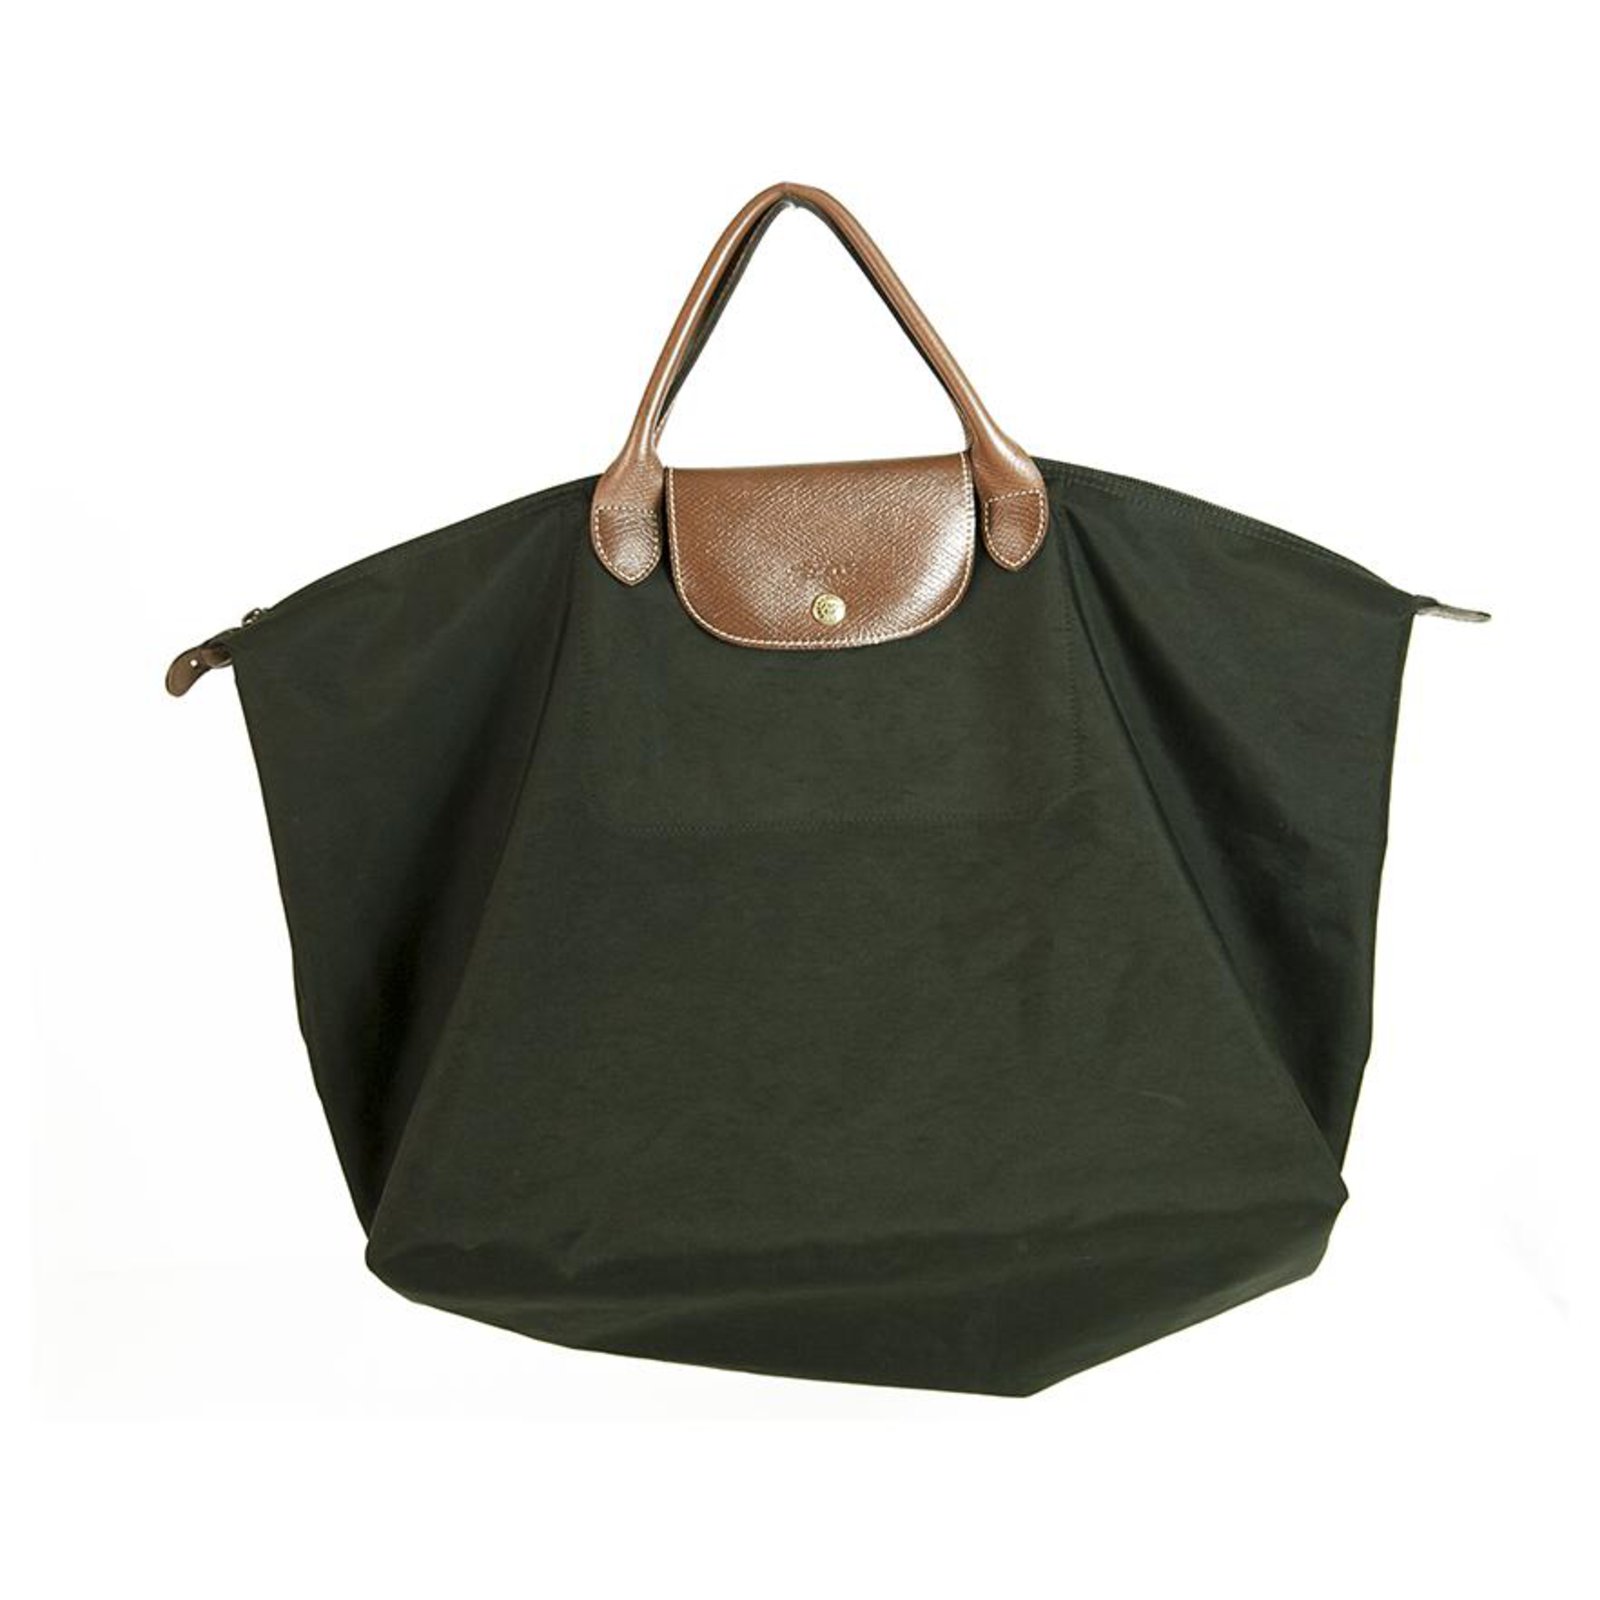 longchamp satchel handbag